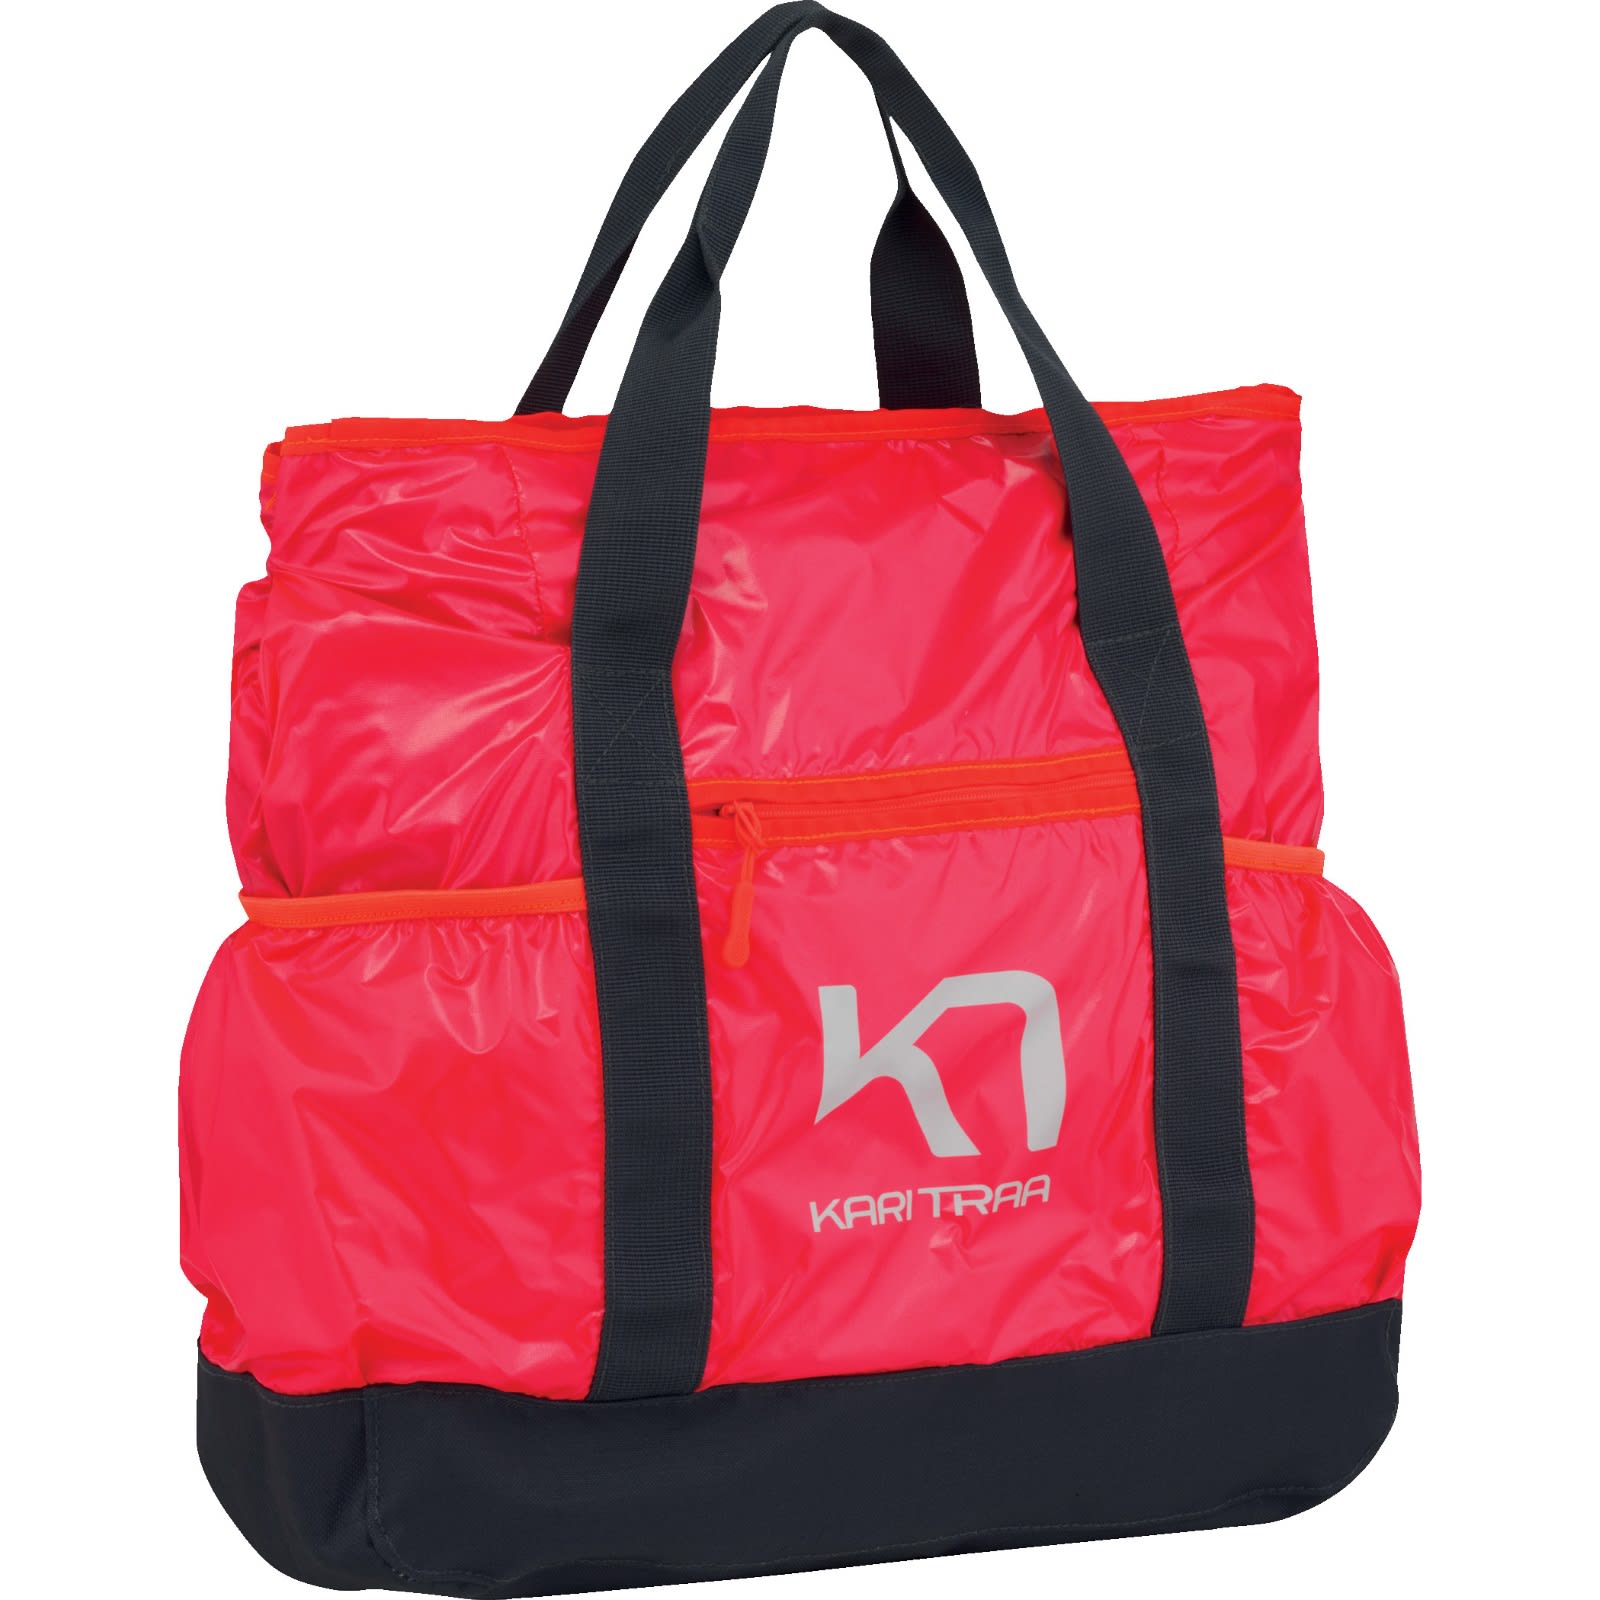 Køb Kari Traa Bag fra Outnorth